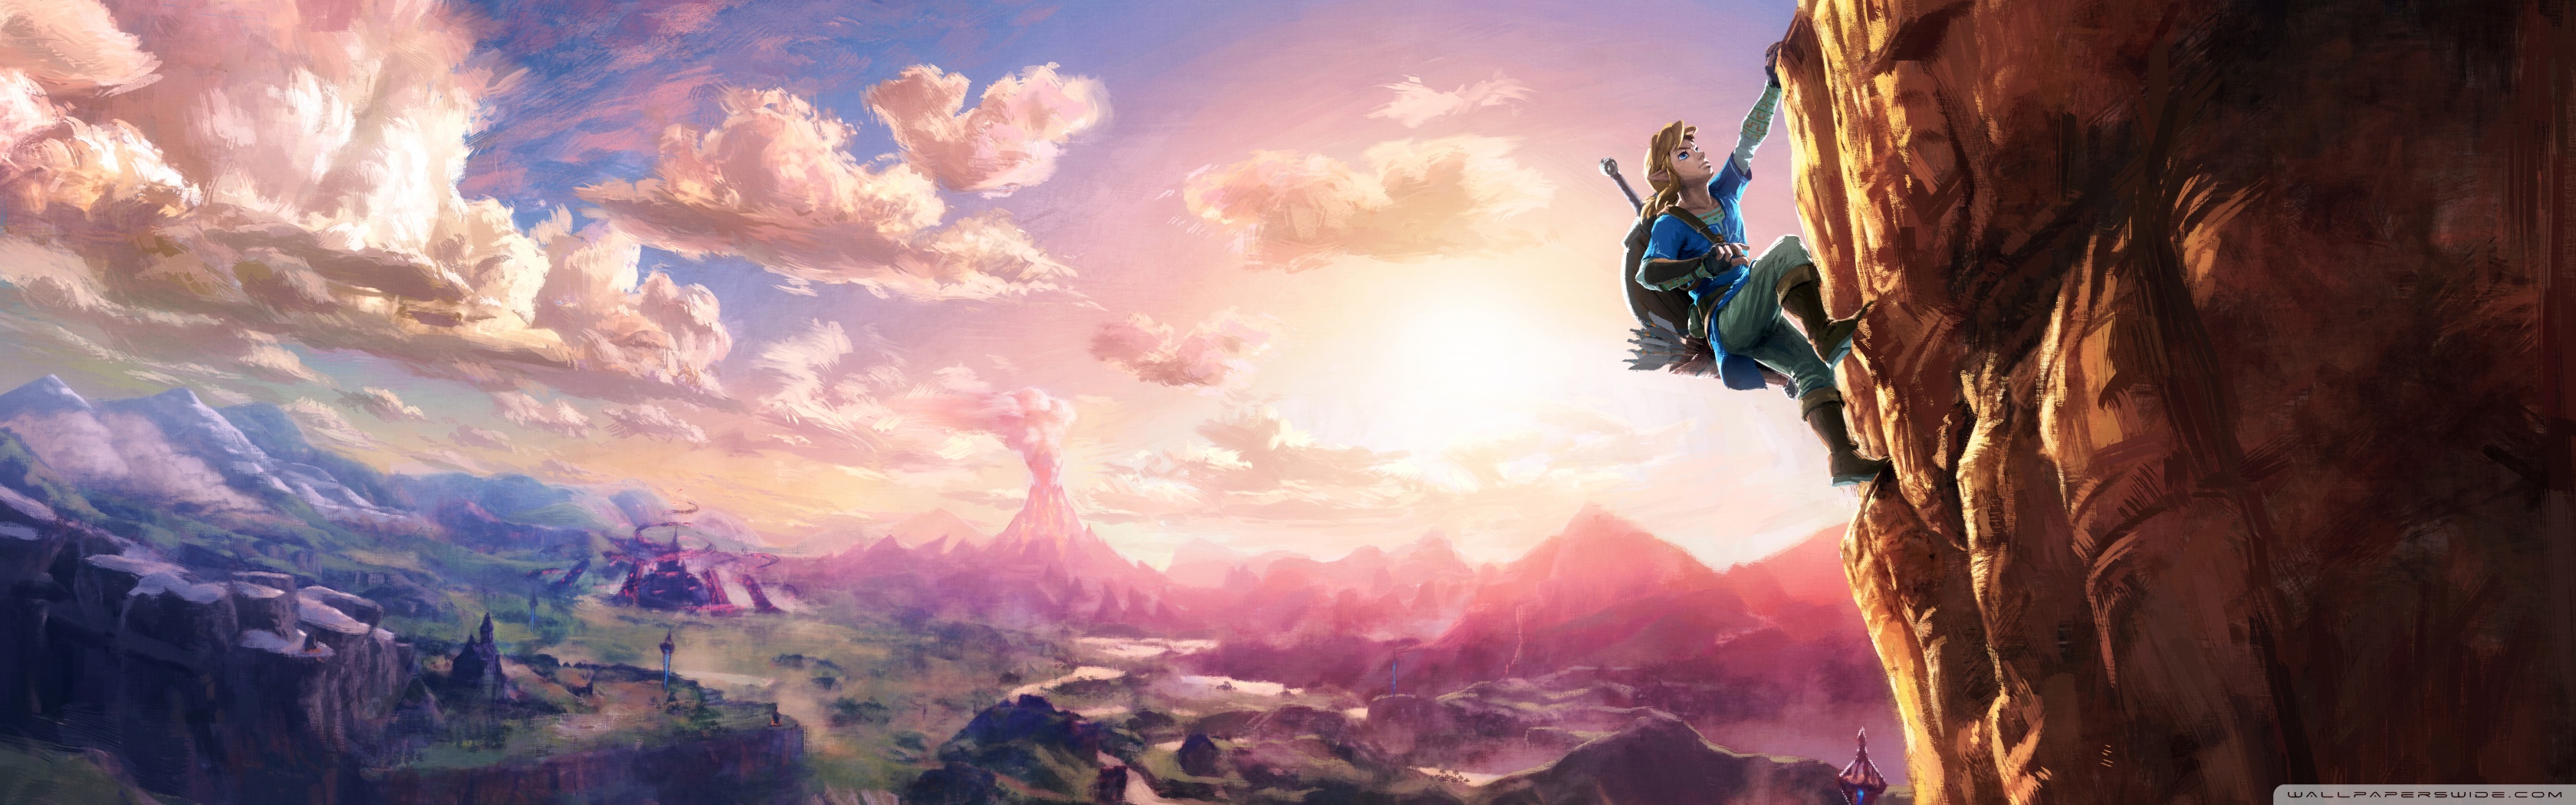 Zelda Breath Of The Wild Wallpaper 1080p - HD Wallpaper 